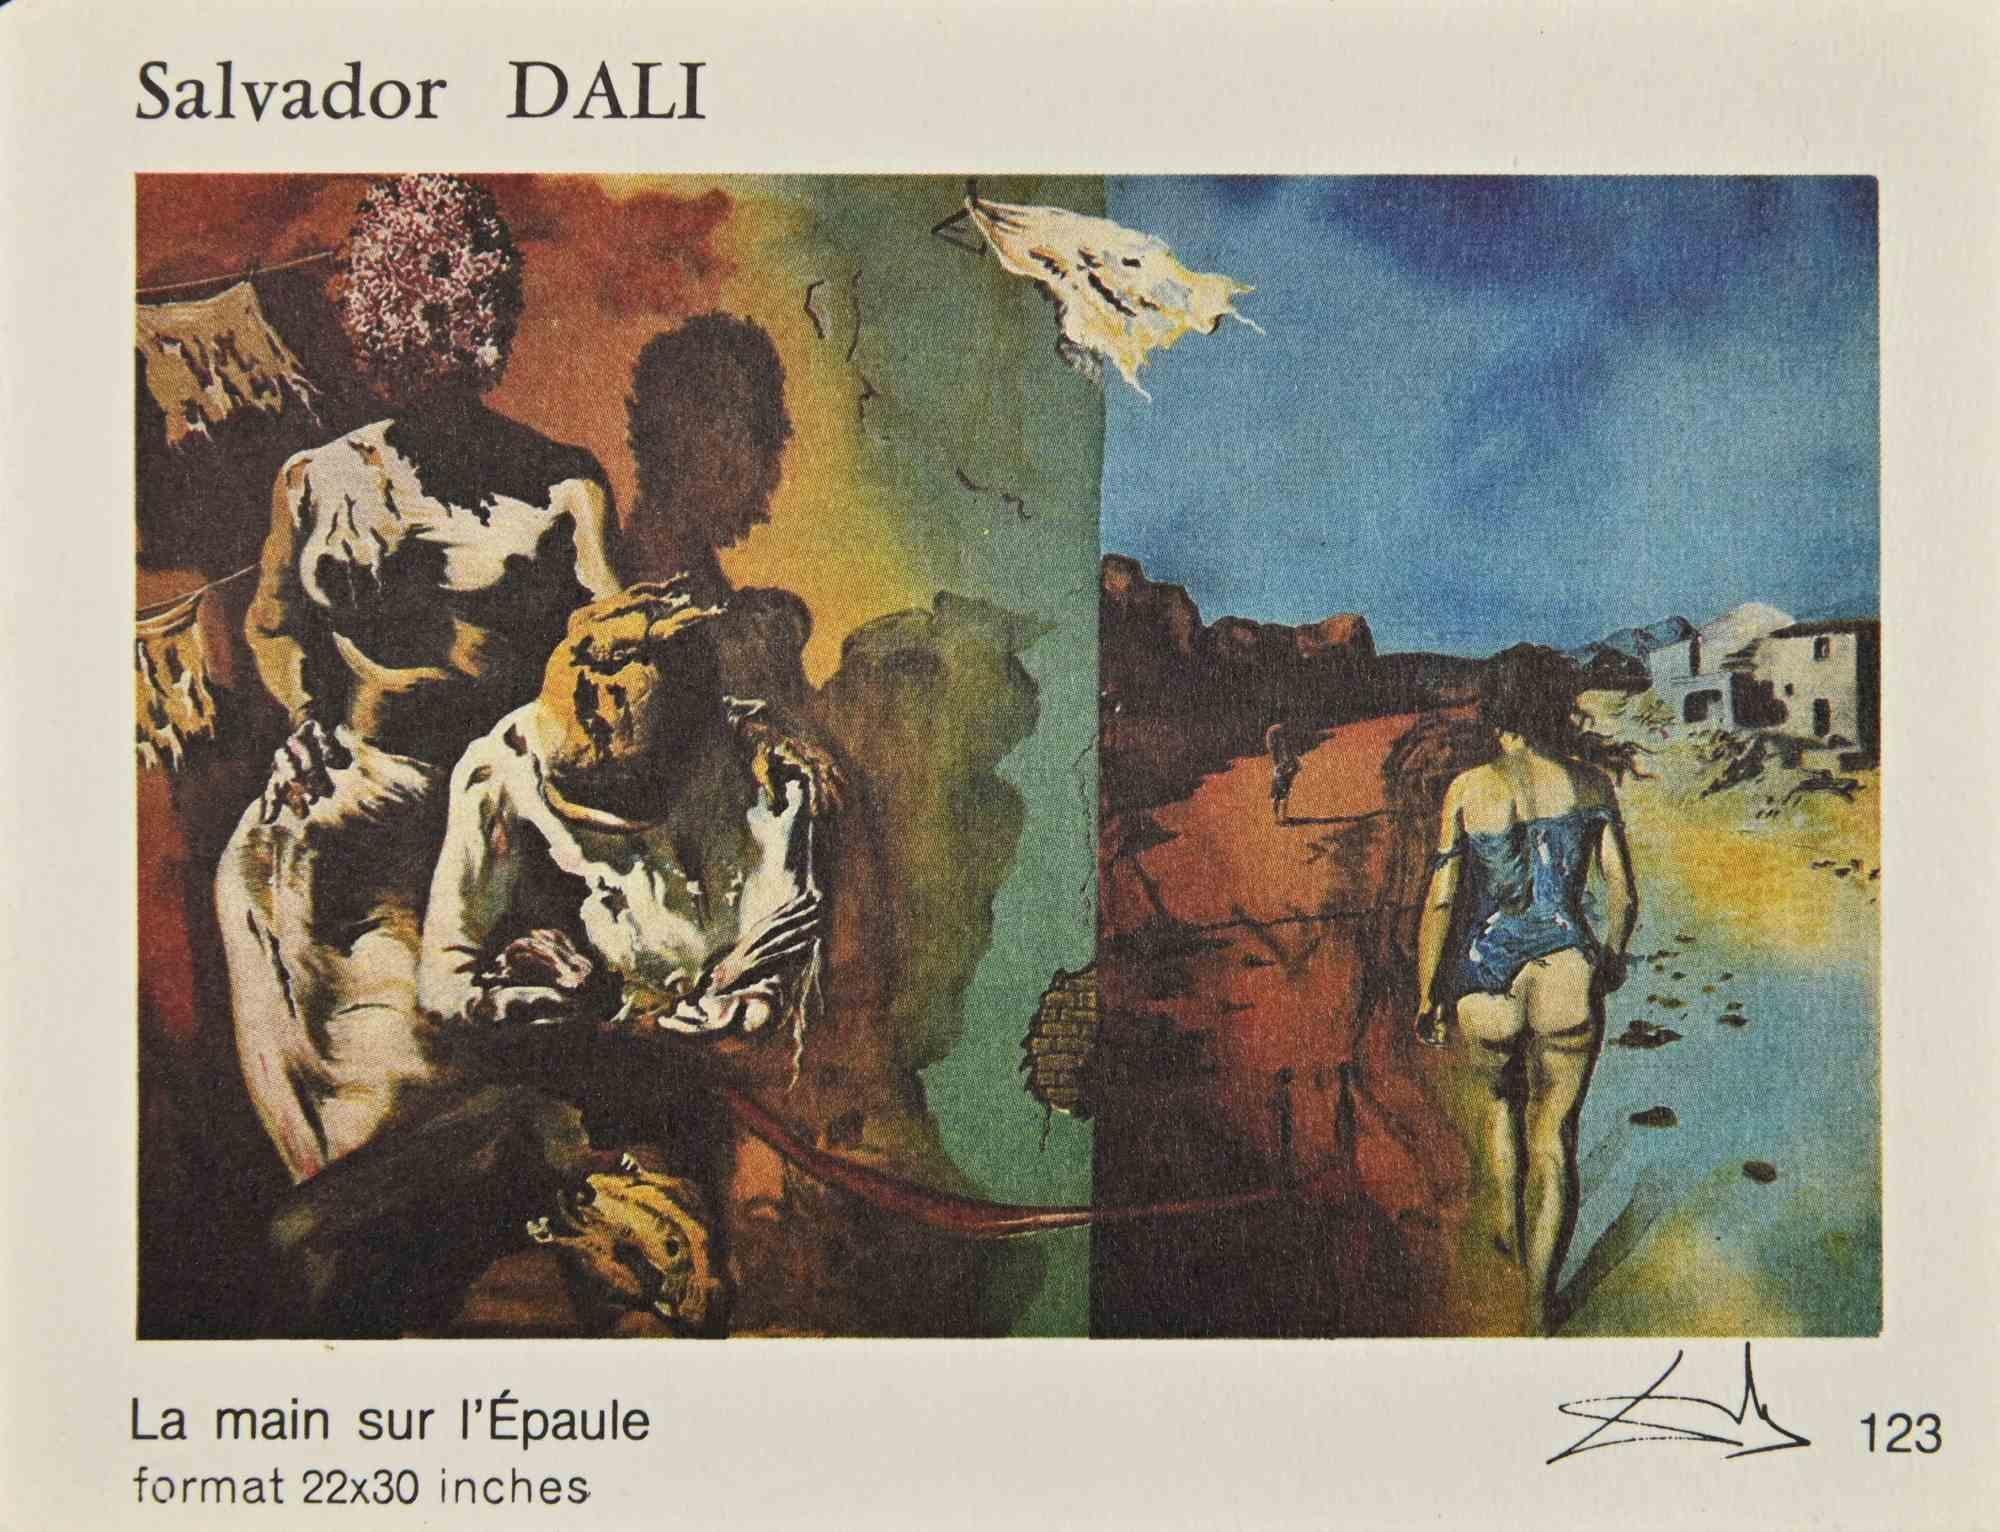 Sammlung von Vintage-Karten nach Salvador Dalì - 1980er Jahre – Print von Salvador Dalí